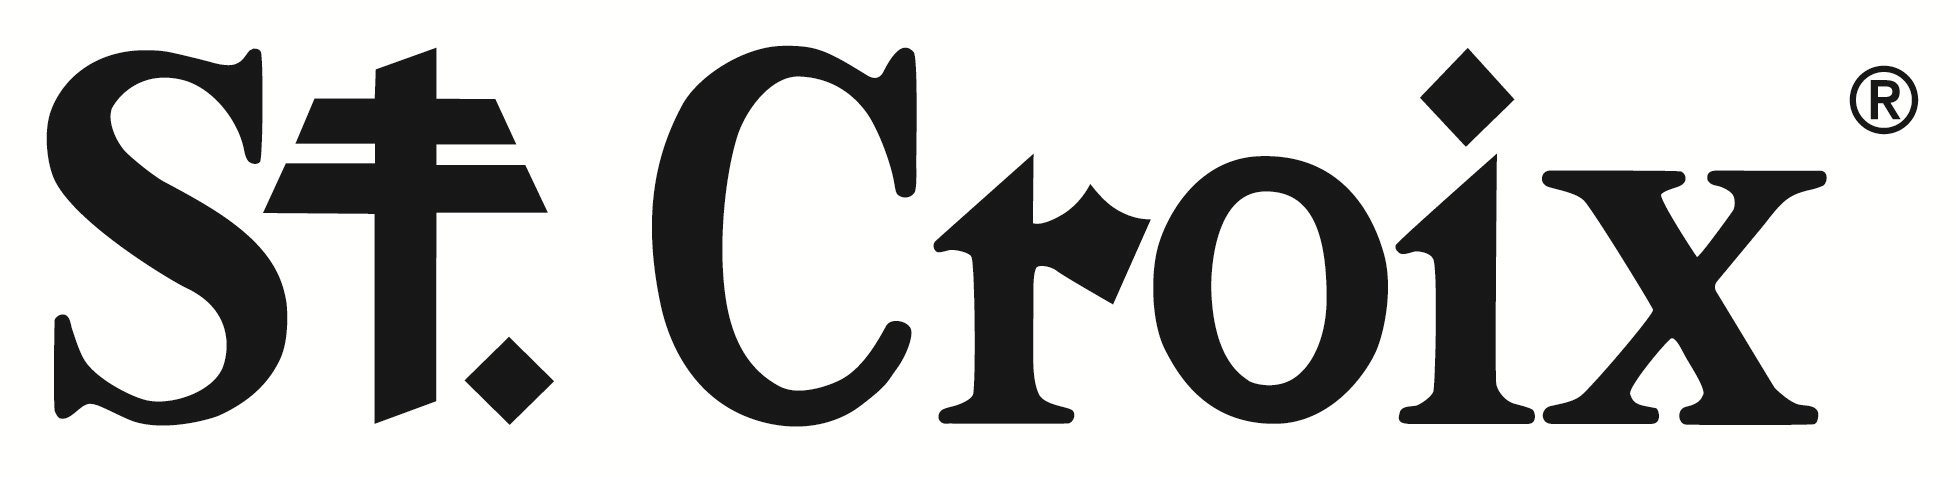 St. Croix Shop Logo